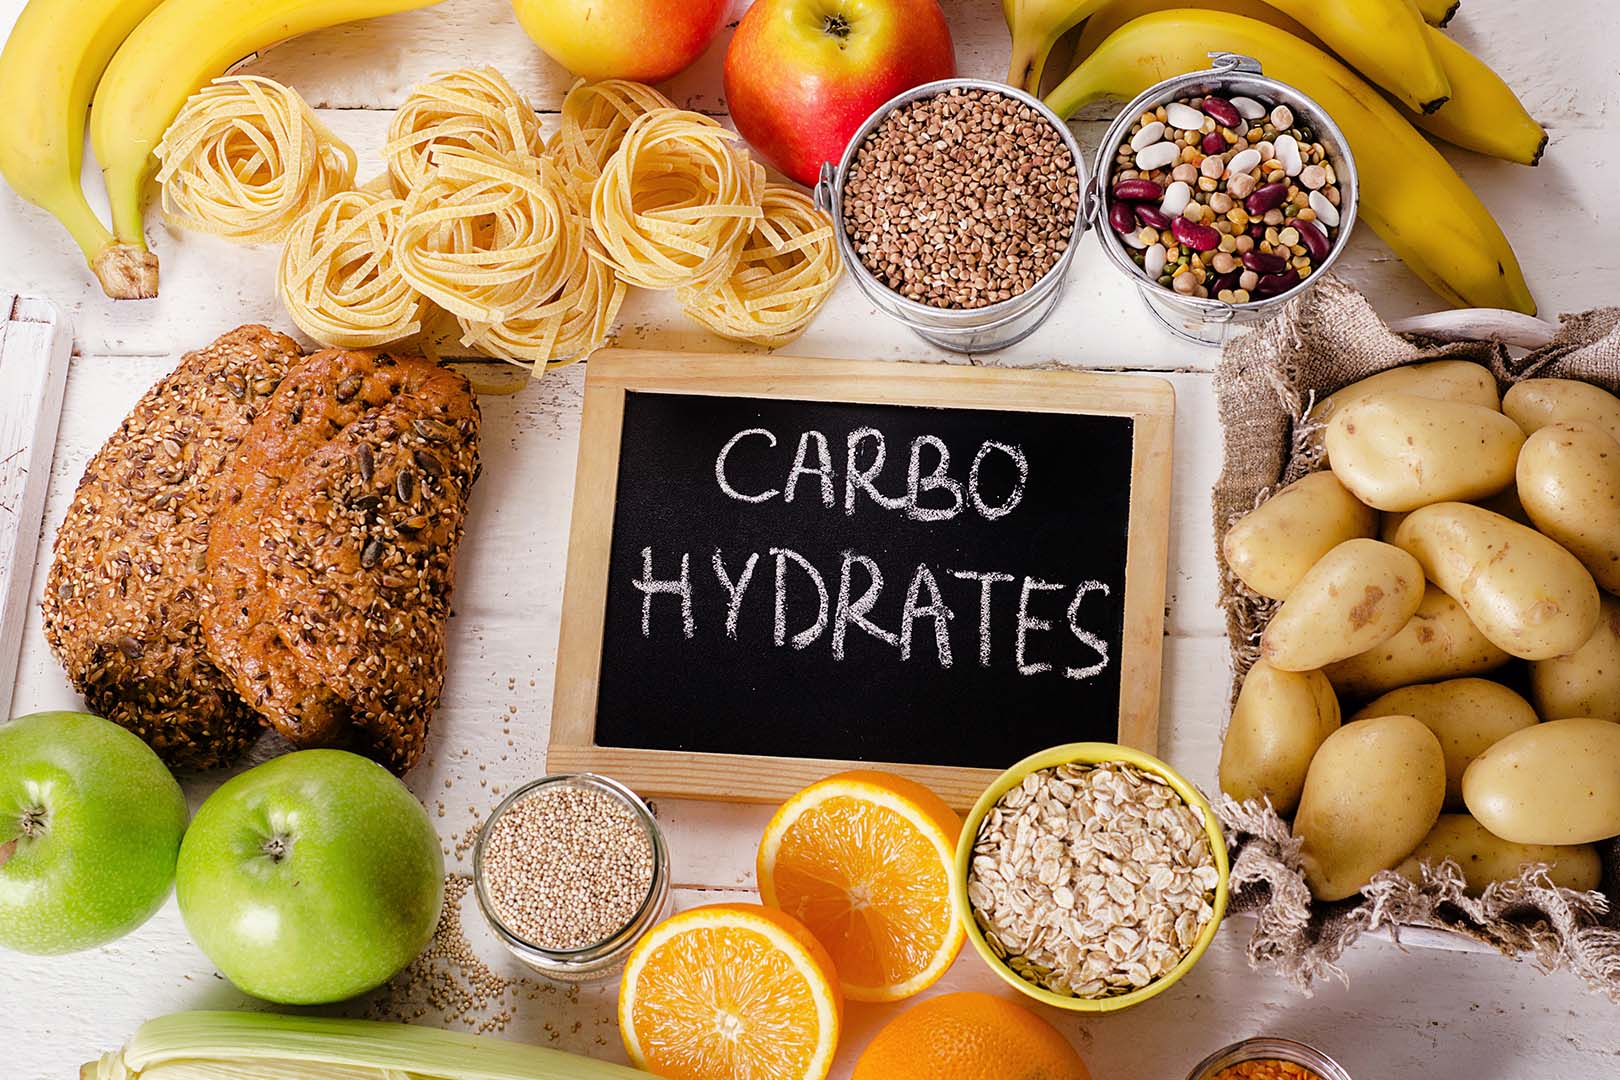 Fungsi karbohidrat dalam tubuh sebagai sumber energi utama membantu proses pencernaan makanan dalam saluran pencernaan bahan makanan yang mengandung karbohidrat antara lain dapat diperoleh dari